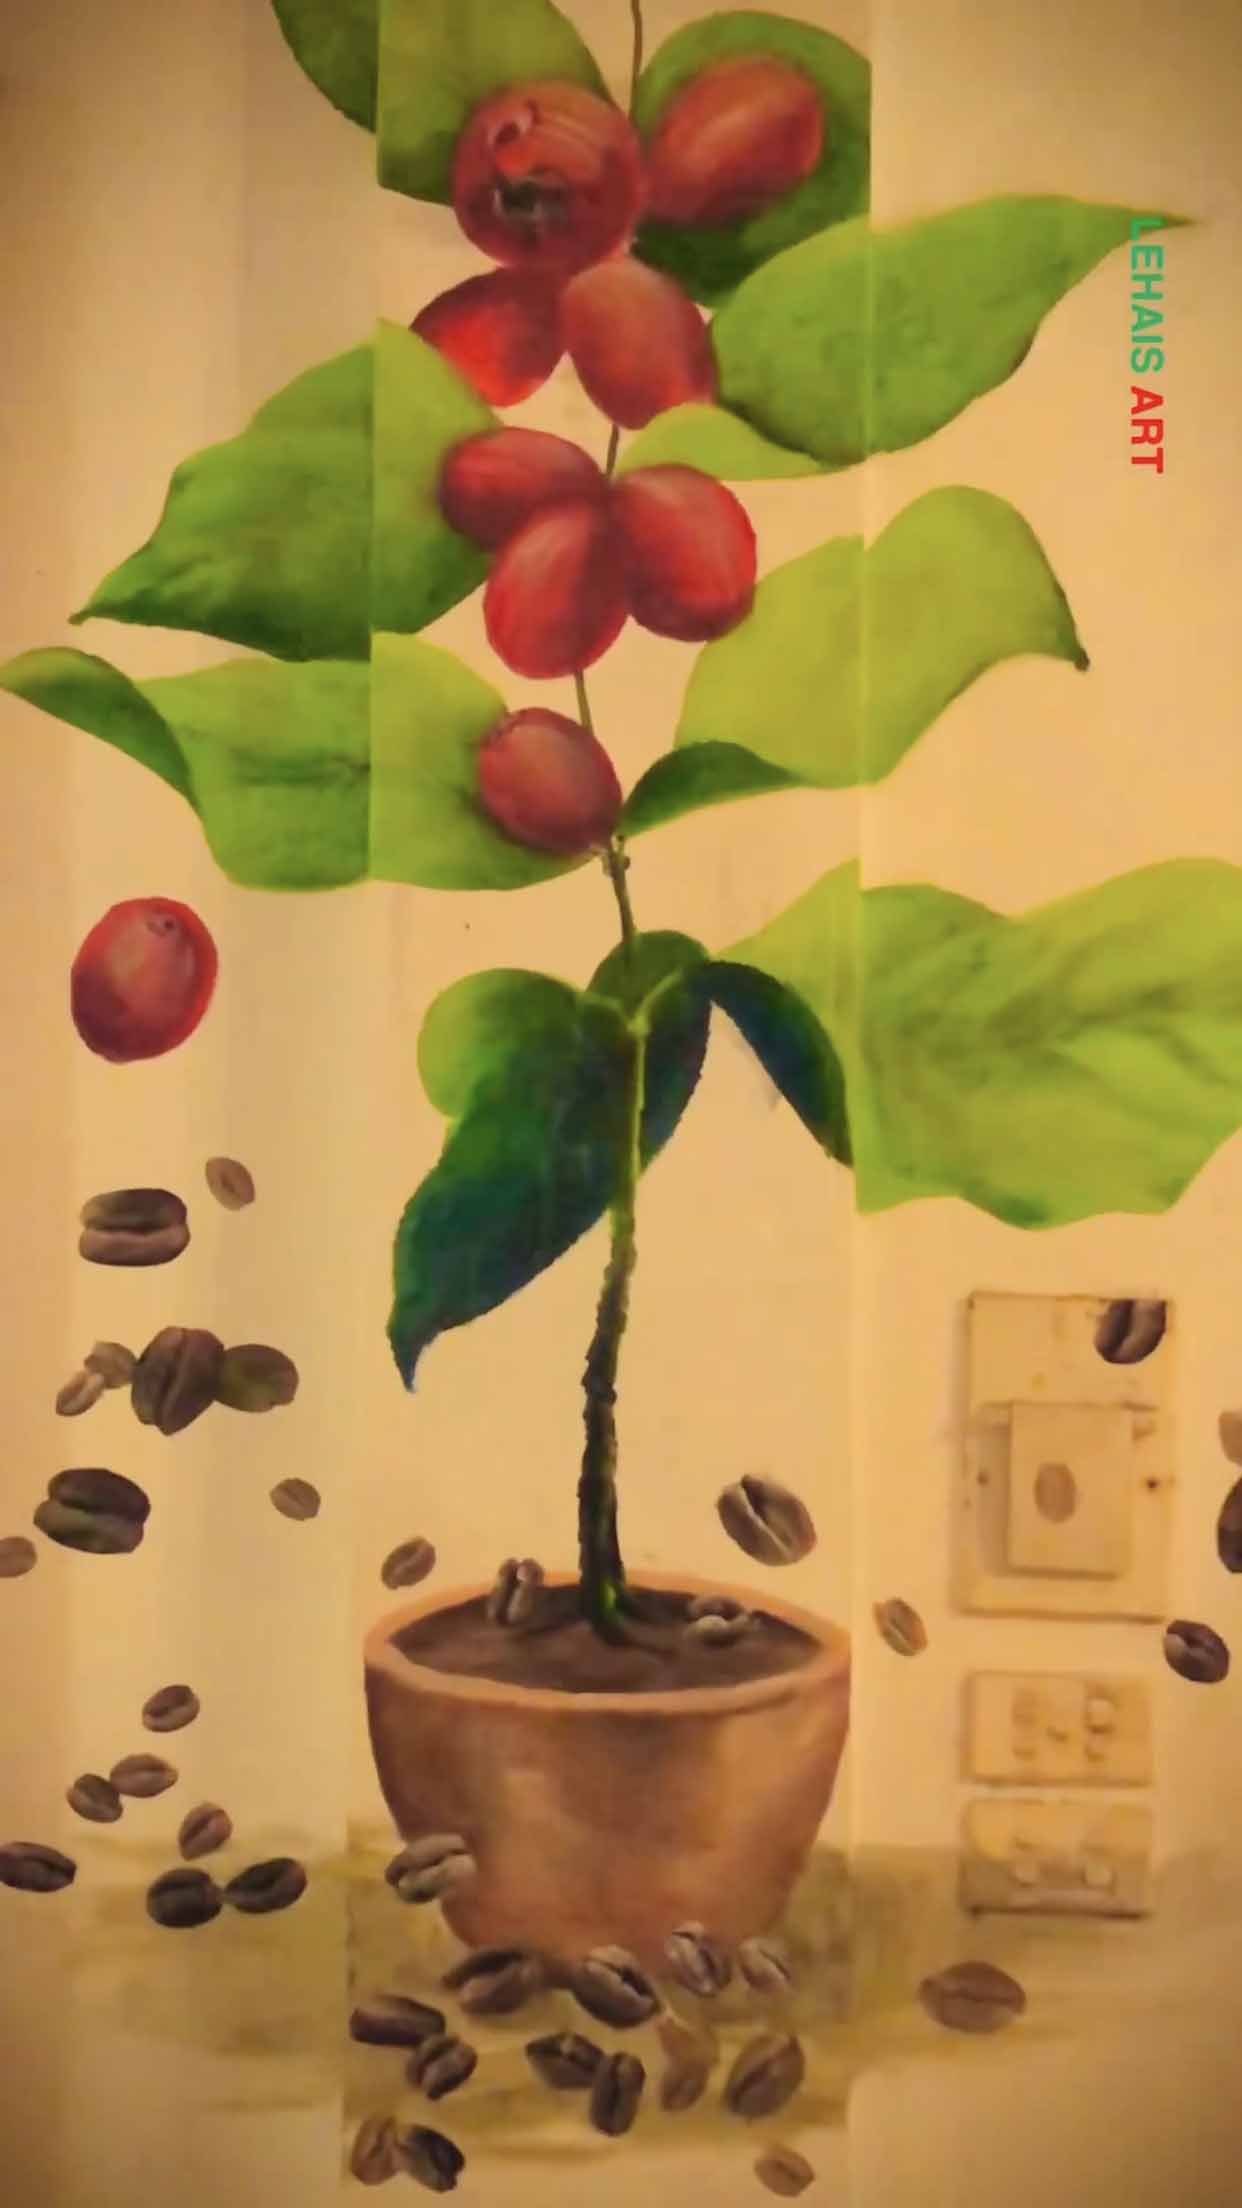 Vẽ cành cây cafe để trang trí quán 2